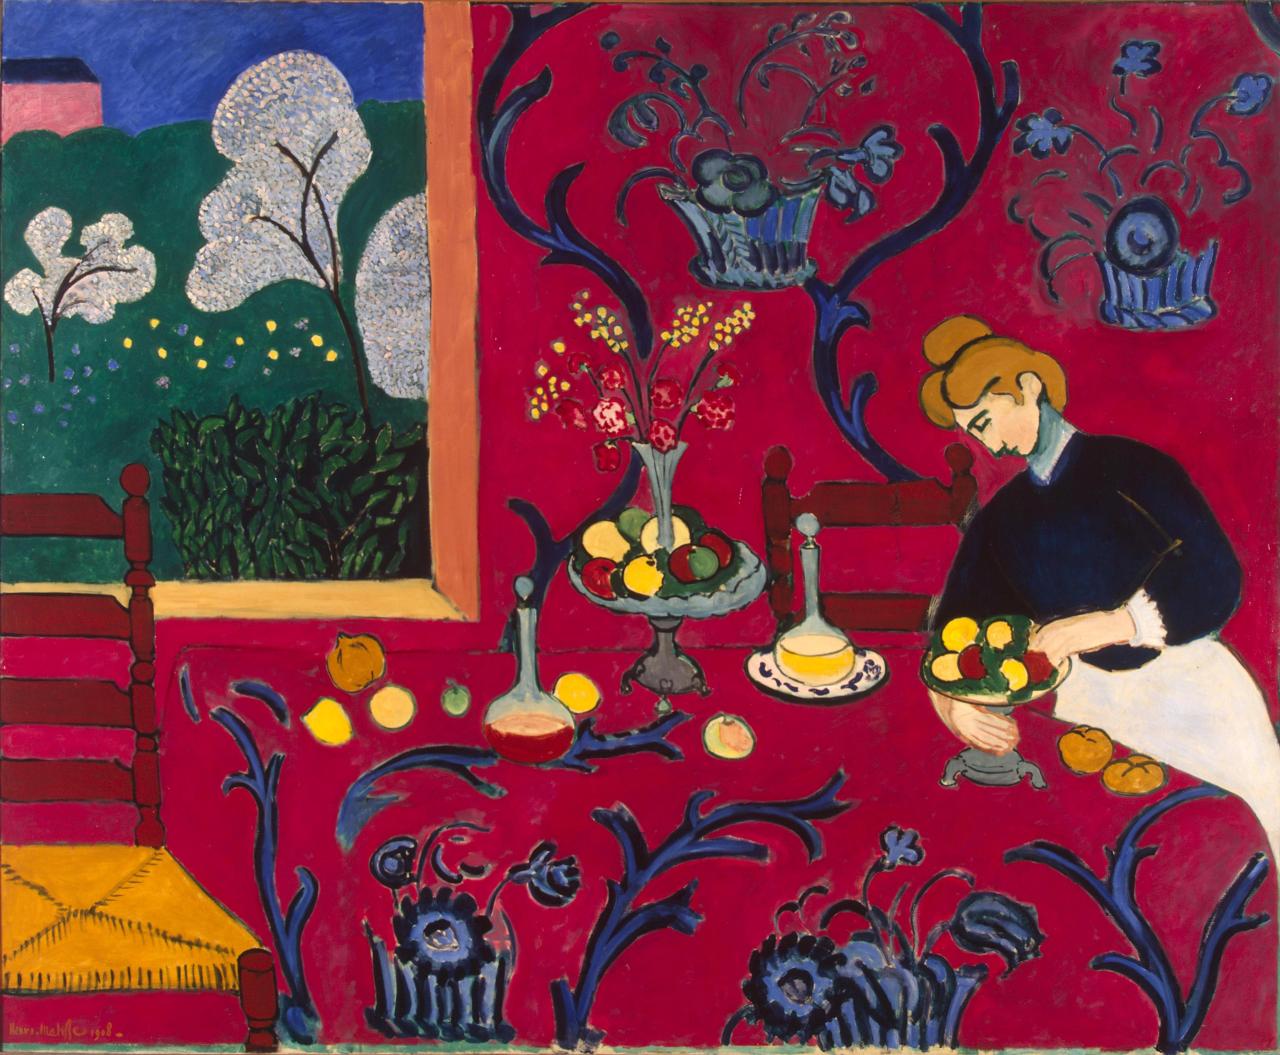 Henri Matisse - “La habitación roja (Armonía en rojo)” (1908, óleo sobre lienzo, 180 x 221 cm, Museo Hermitage, San Petersburgo)
En este enorme lienzo, una de las obras clave del Fauvismo, Matisse combinó tres géneros pictóricos en uno: bodegón,...